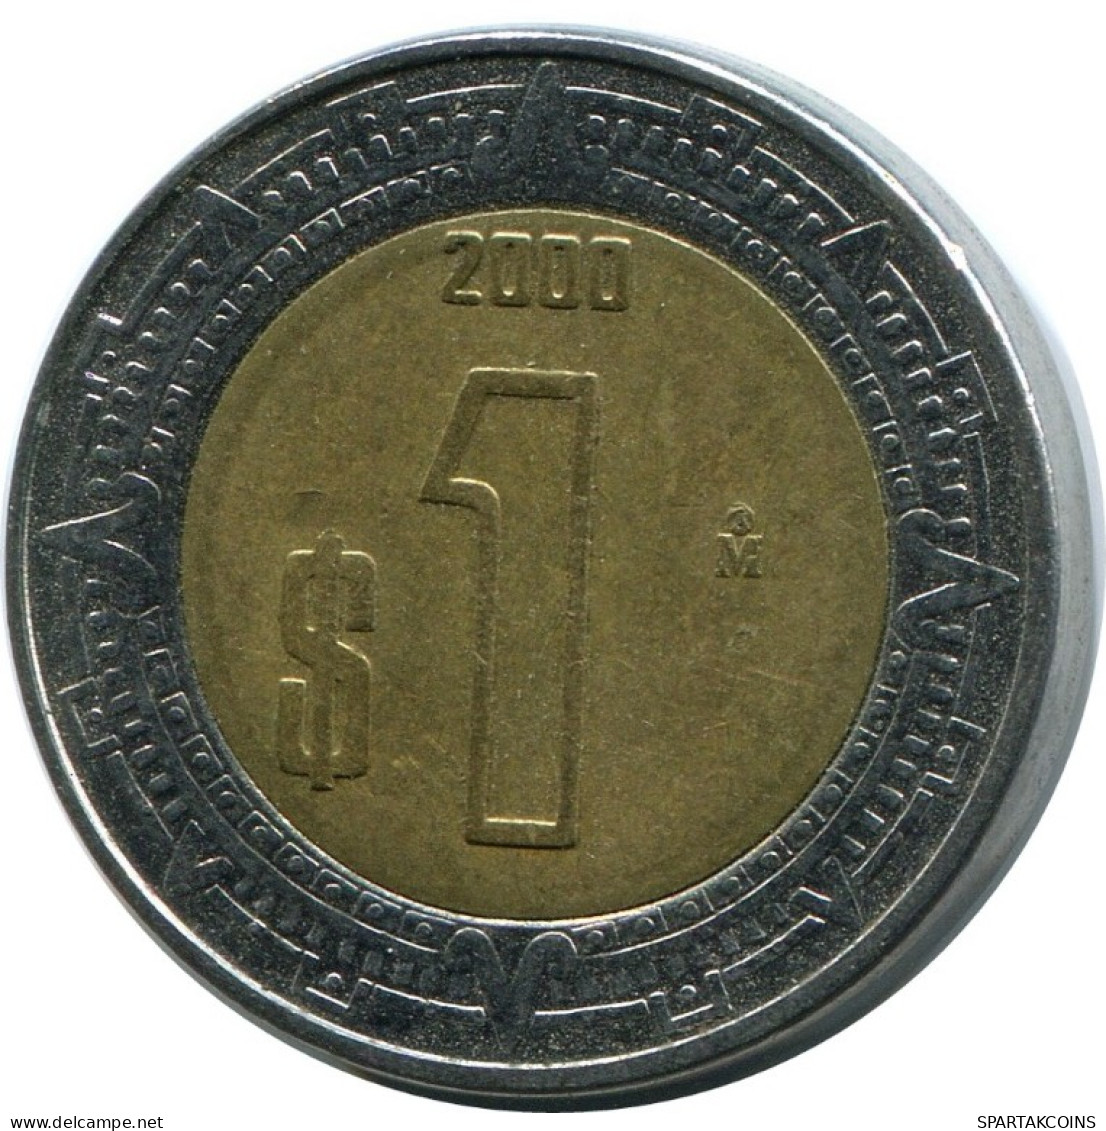 1 PESO 2000 MEXICO Coin #AH501.5.U.A - Mexico